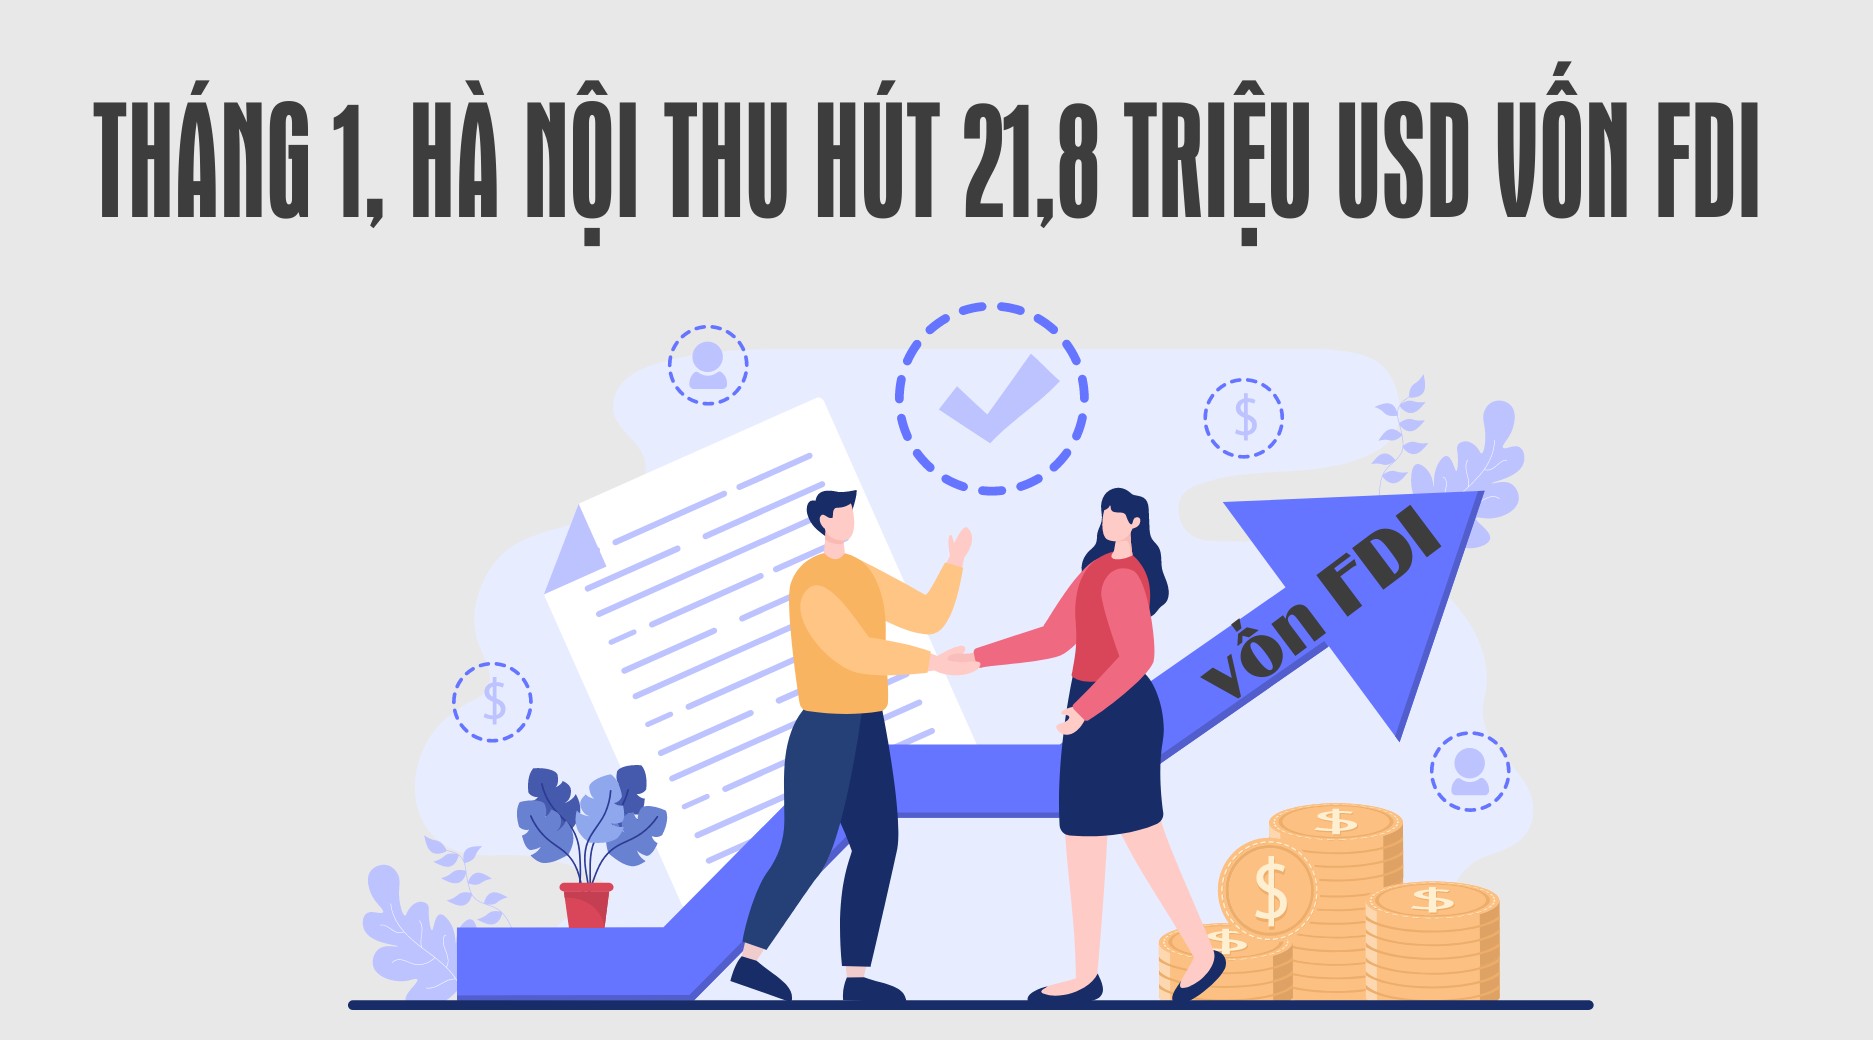 [Infographic]: Tháng 1, Hà Nội thu hút 21,8 triệu USD vốn FDI